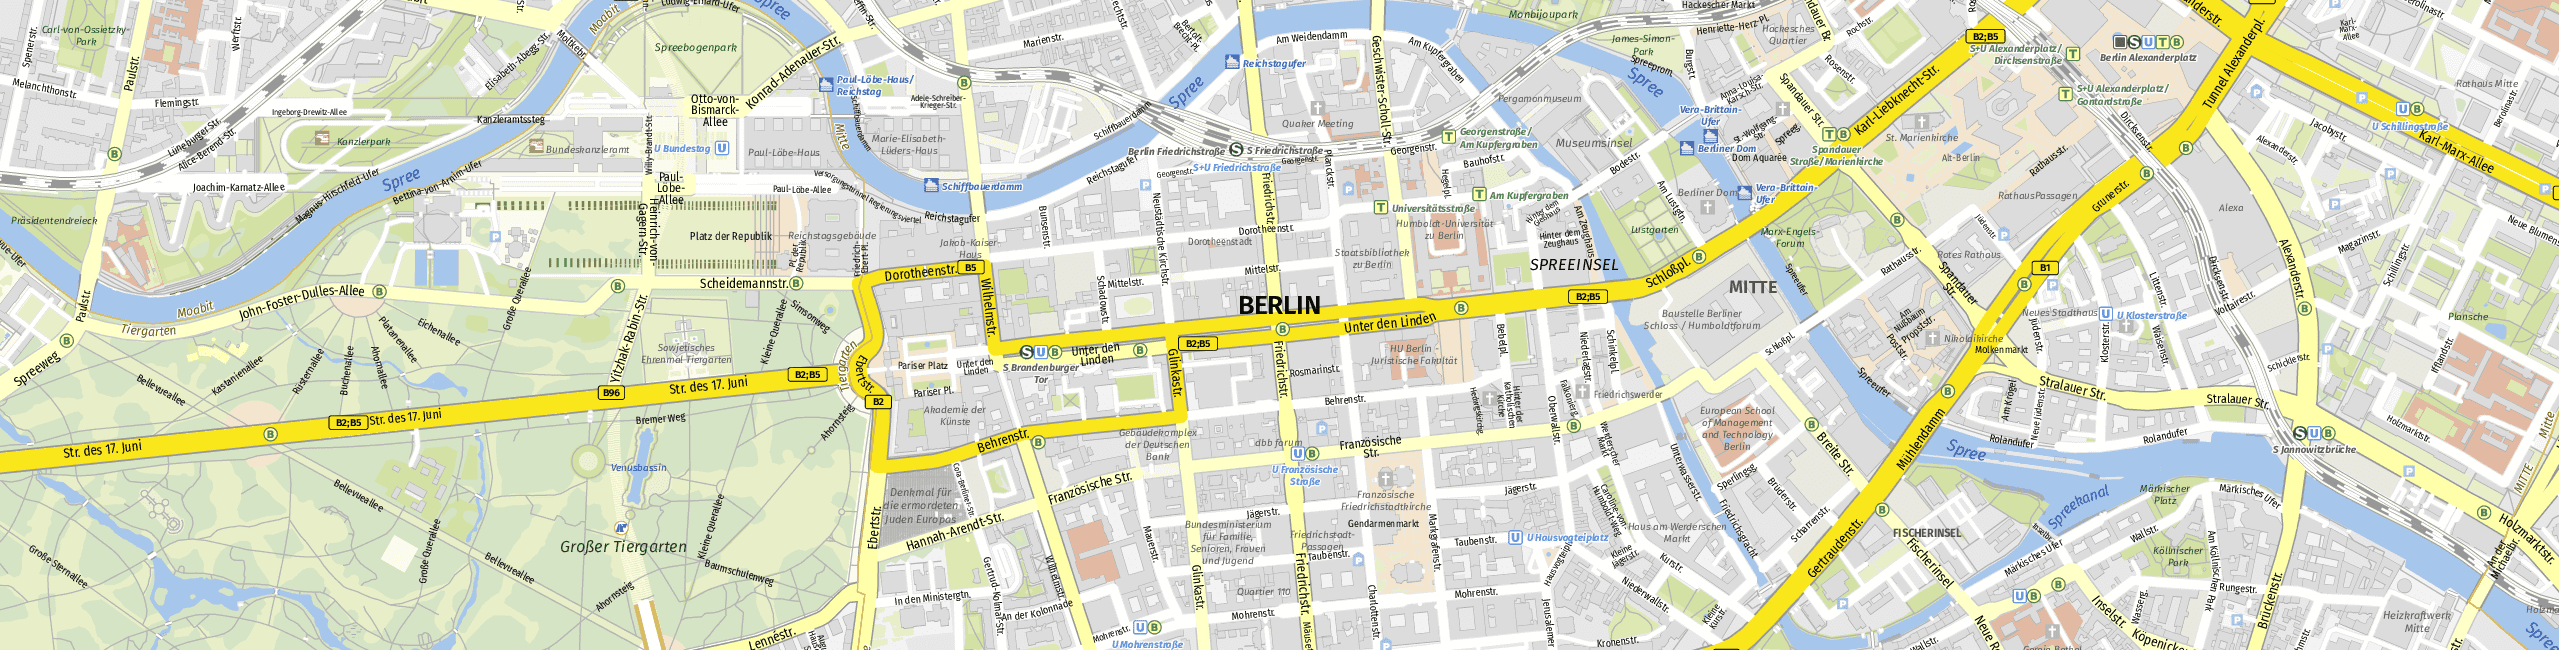 Stadtplan Berlin zum Downloaden.